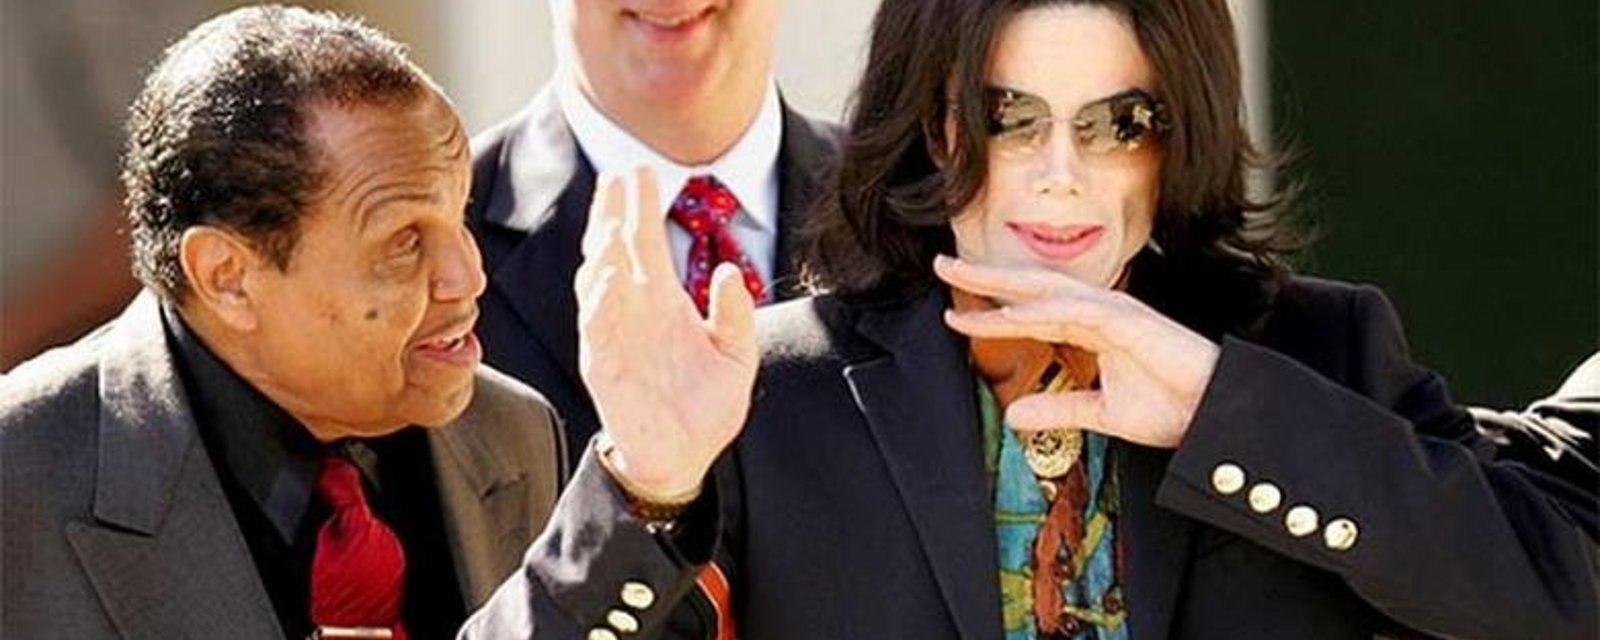 Un nouveau drame touche la famille de Michael Jackson